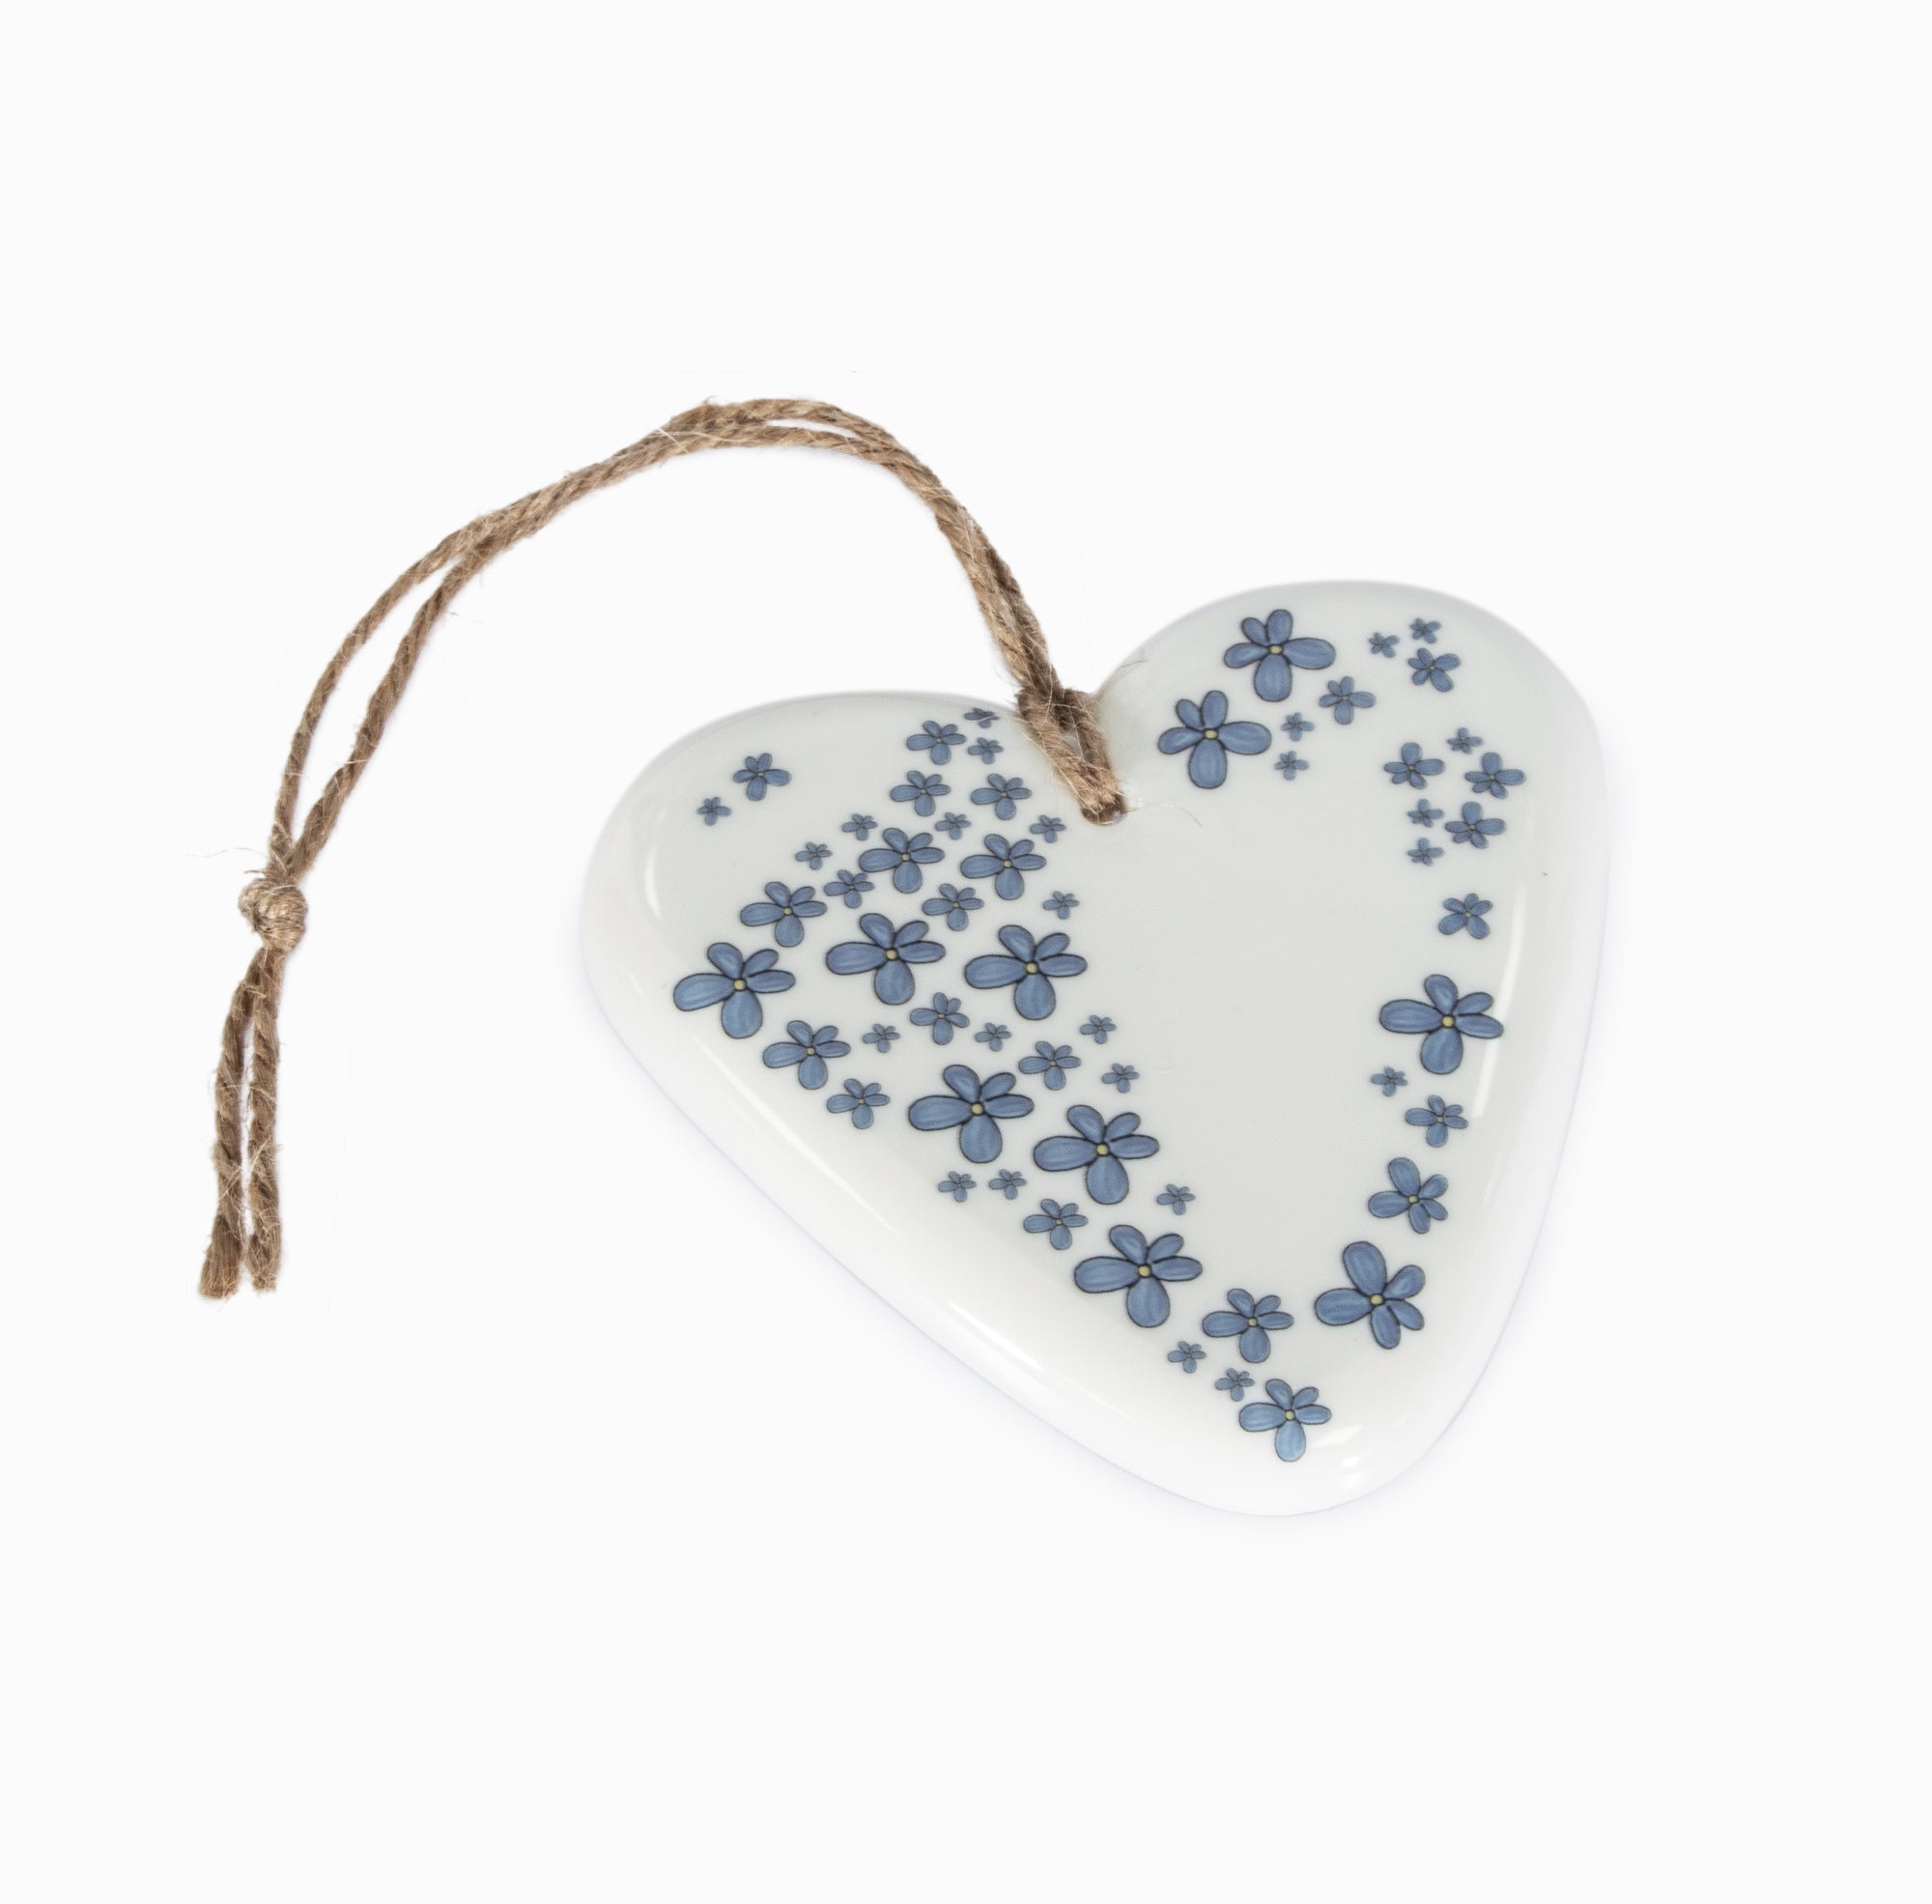 Forget-me-not handmade heart hanger